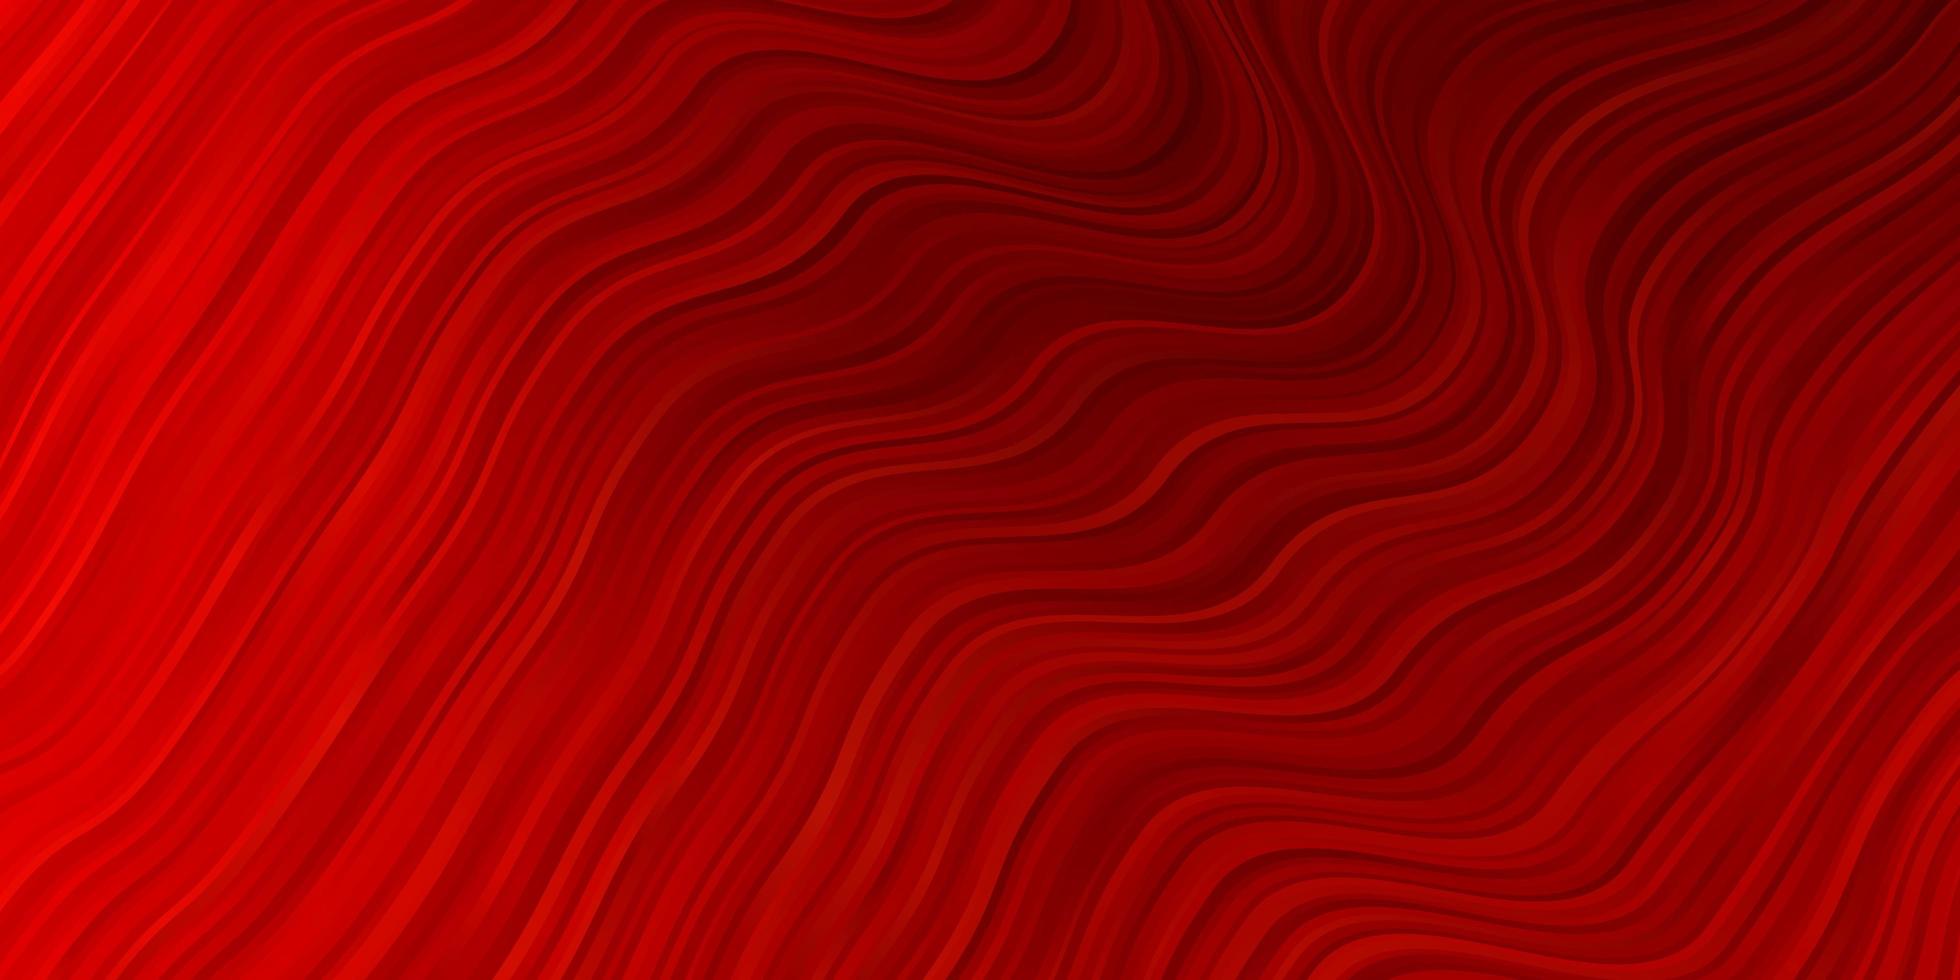 texture de vecteur rouge clair avec des courbes.